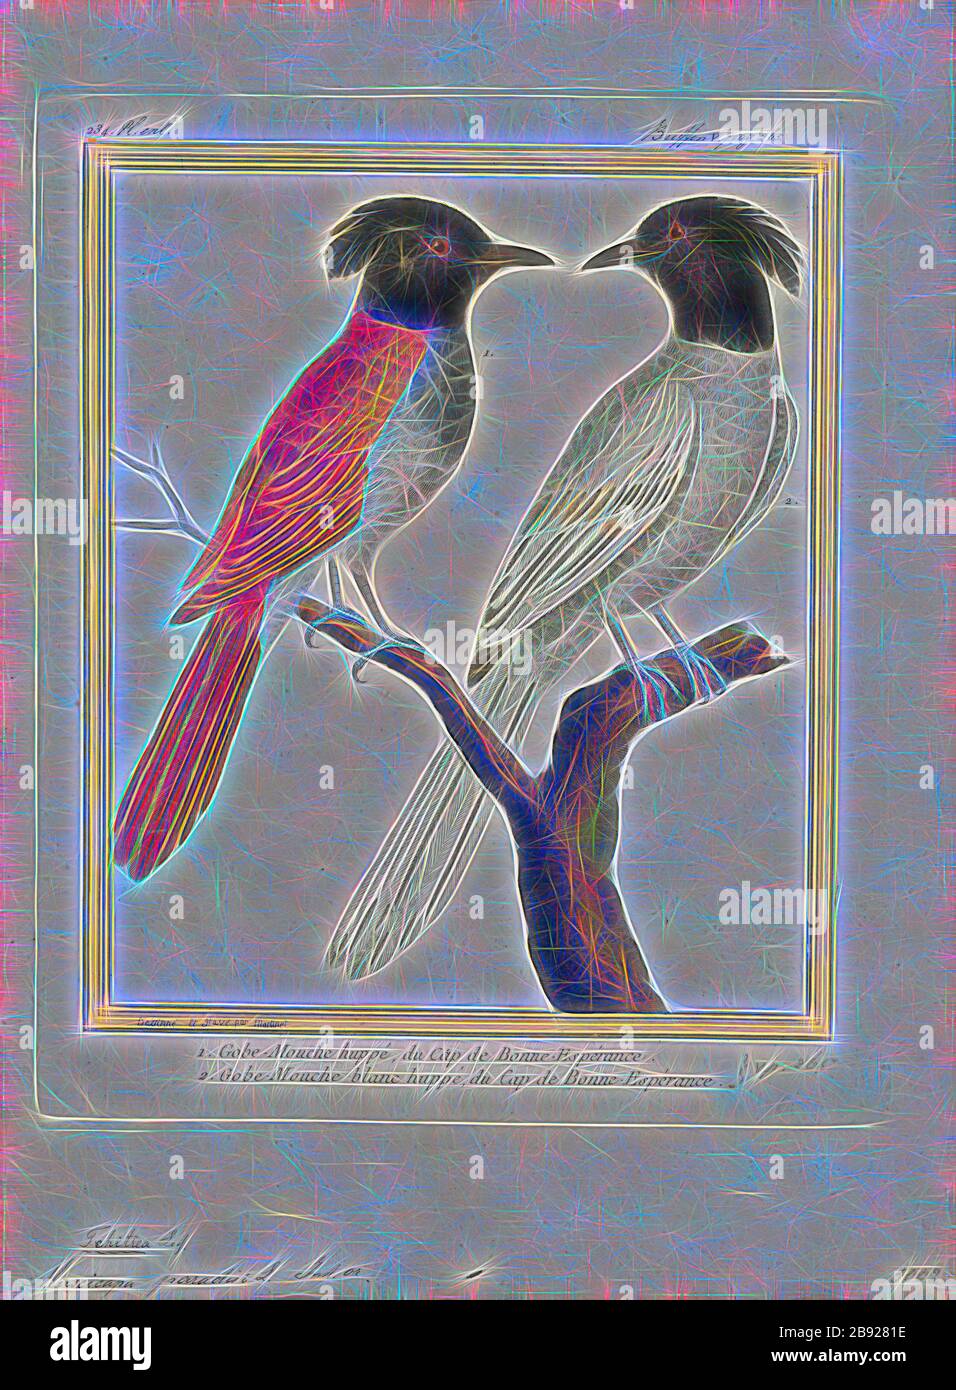 Tchitrea Paradisi, Print, The Indian Paradise Flycatcher (Terpsiphone paradisi) ist ein mittelgroßer Passiervogel, der in Asien heimisch ist und dort weit verbreitet ist. Da die Weltbevölkerung als stabil gilt, wird sie seit 2004 auf der Roten Liste der Weltnaturschutze als am wenigsten betroffen geführt. Sie ist auf dem indischen Subkontinent, Zentralasien und Myanmar heimisch., 1700-1880, von Gibon neu vorgestellt, Design von warmem, fröhlichem Leuchten von Helligkeit und Lichtstrahlen. Klassische Kunst mit moderner Note neu erfunden. Fotografie, inspiriert von Futurismus, mit dynamischer Energie moderner Technologie, Bewegung, Geschwindigkeit und Revolut Stockfoto